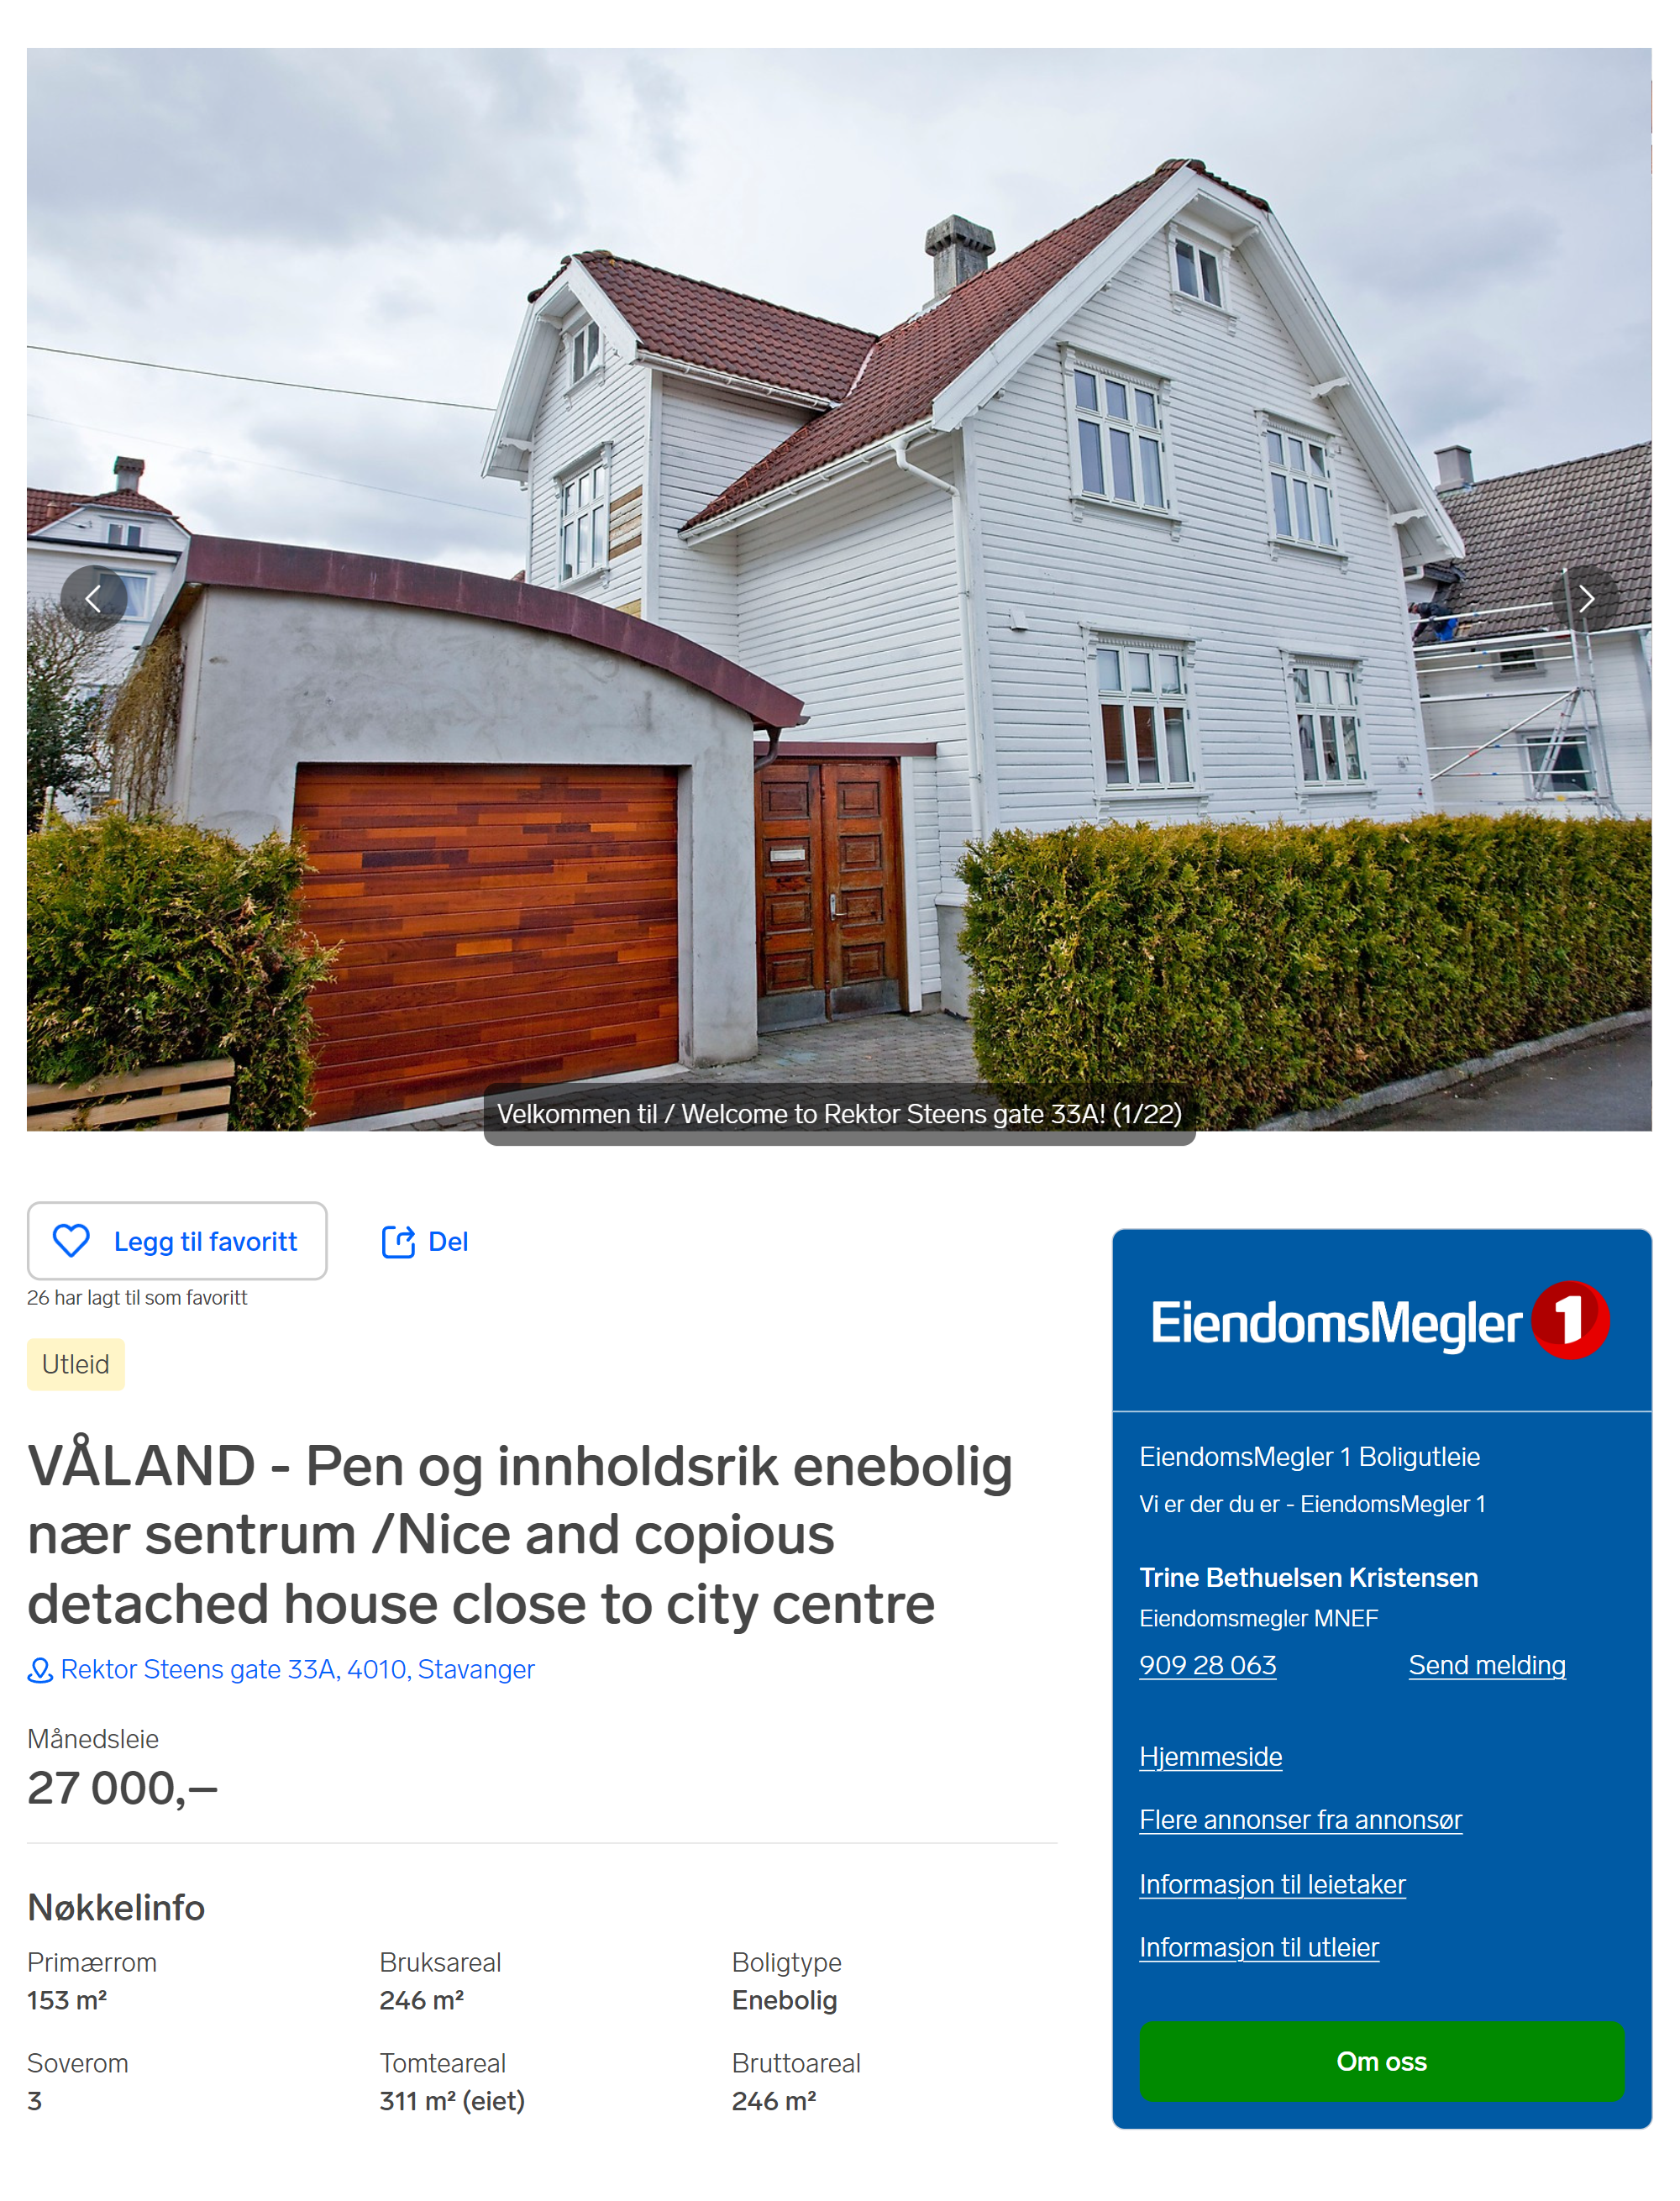 Дом в Ставангере с тремя спальнями стоит 27 000 kr в месяц. Источник: finn.no